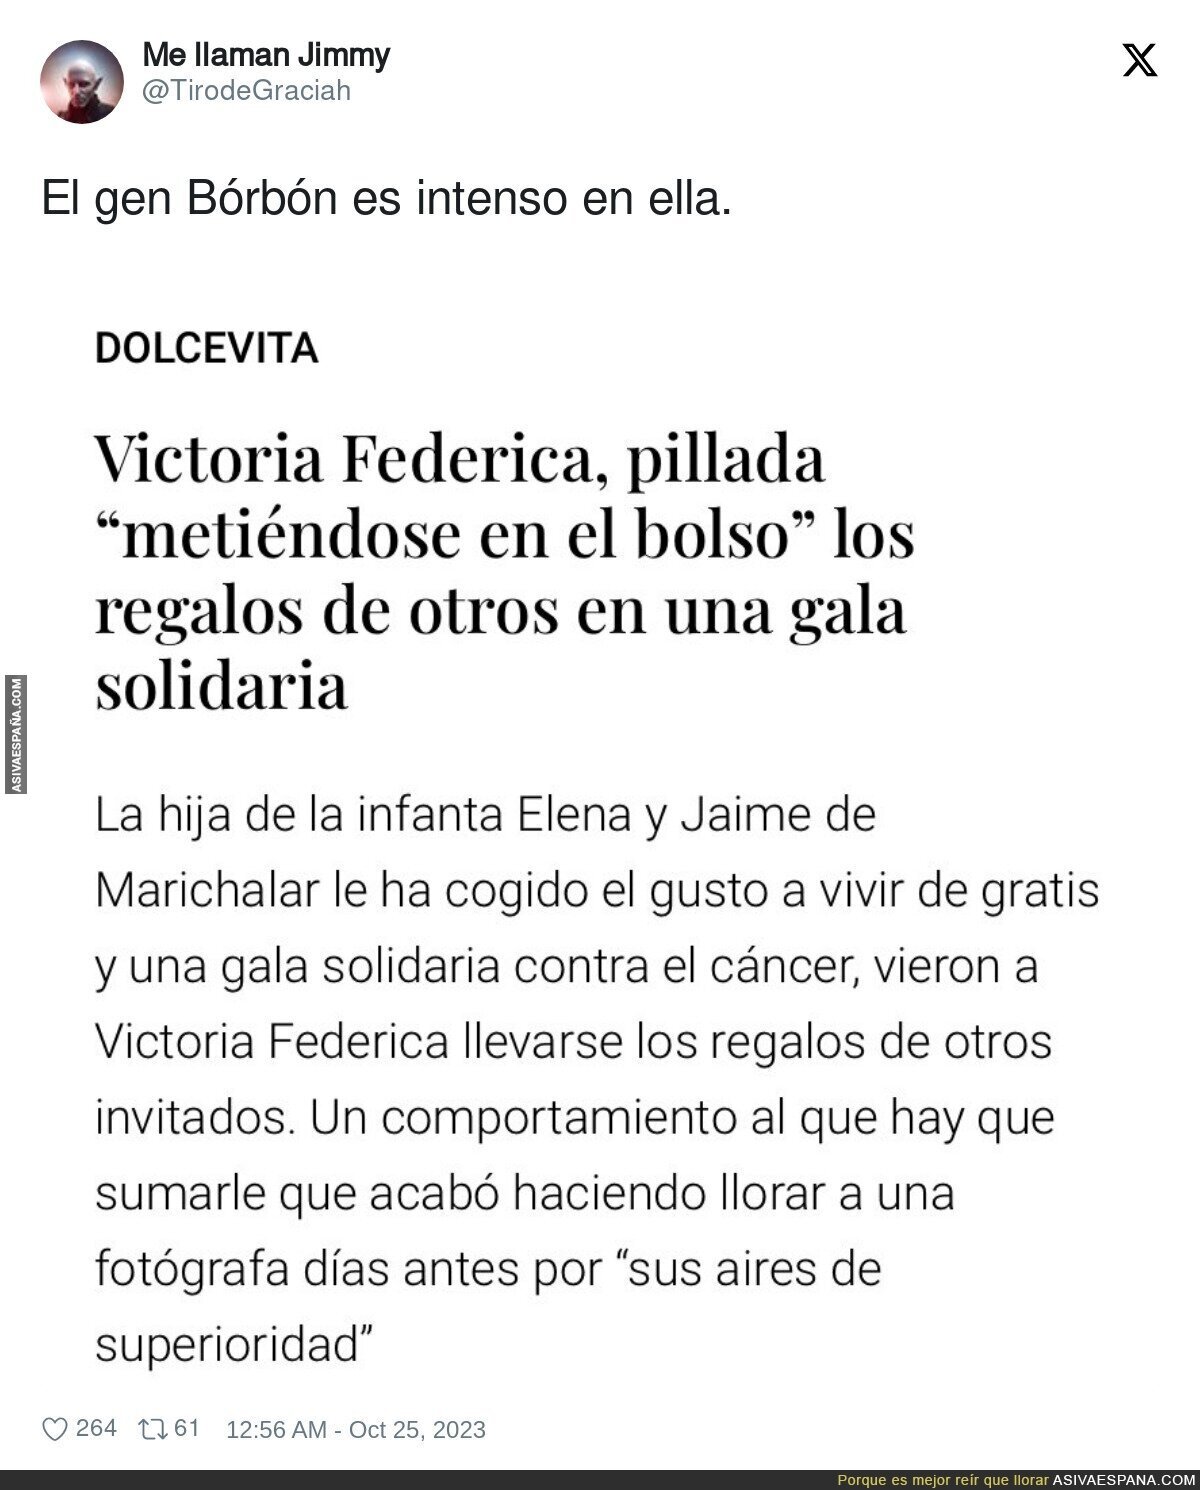 Victoria Federica es una Borbón 100%